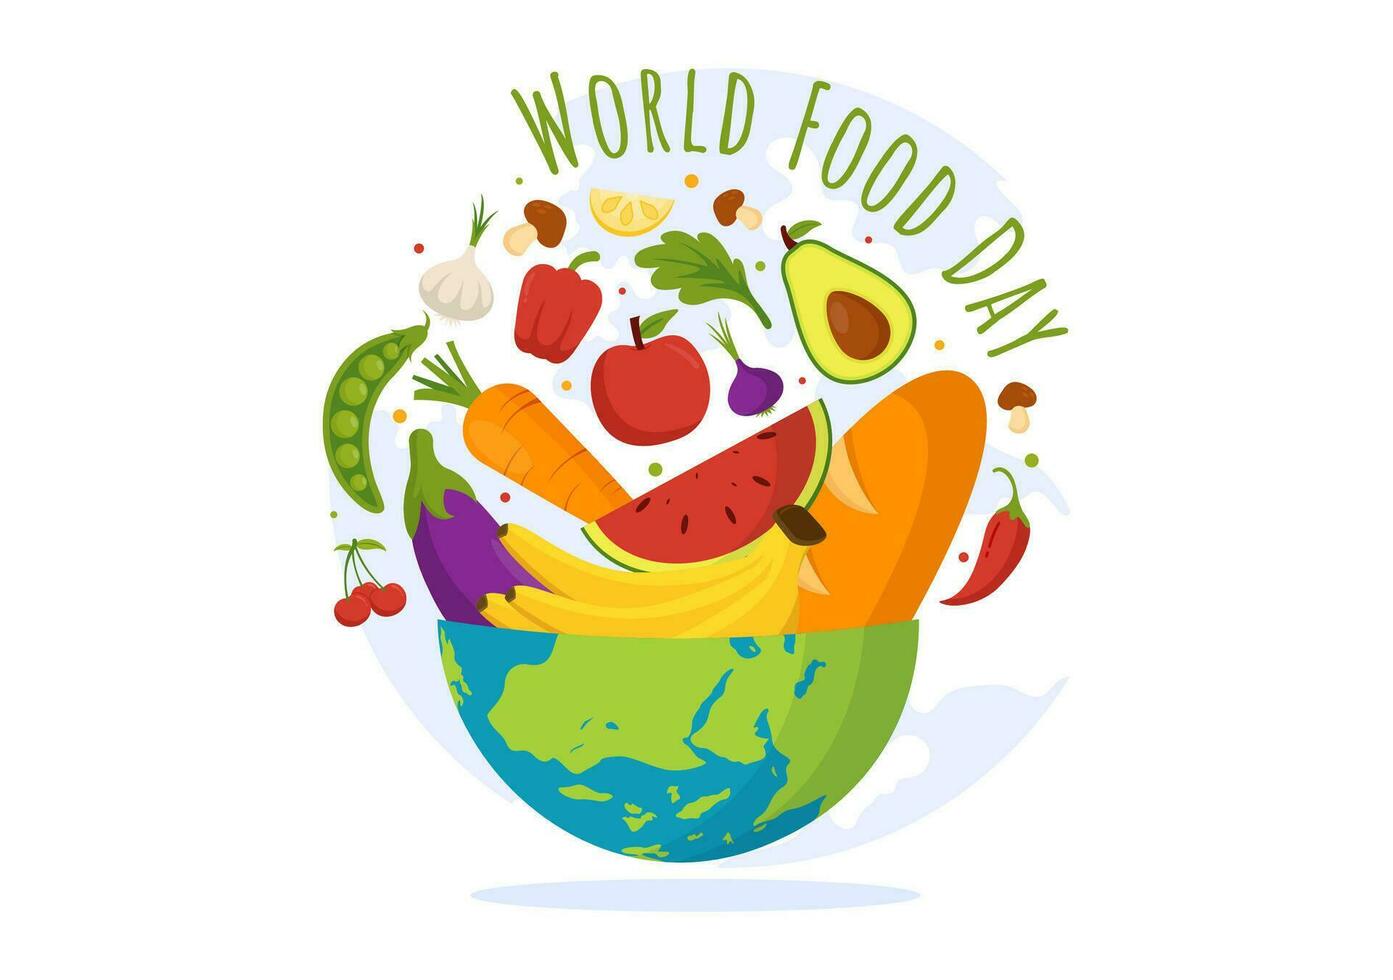 mundo comida día vector ilustración en dieciséis octubre con varios alimentos, Fruta y vegetal en plano dibujos animados mano dibujado antecedentes plantillas